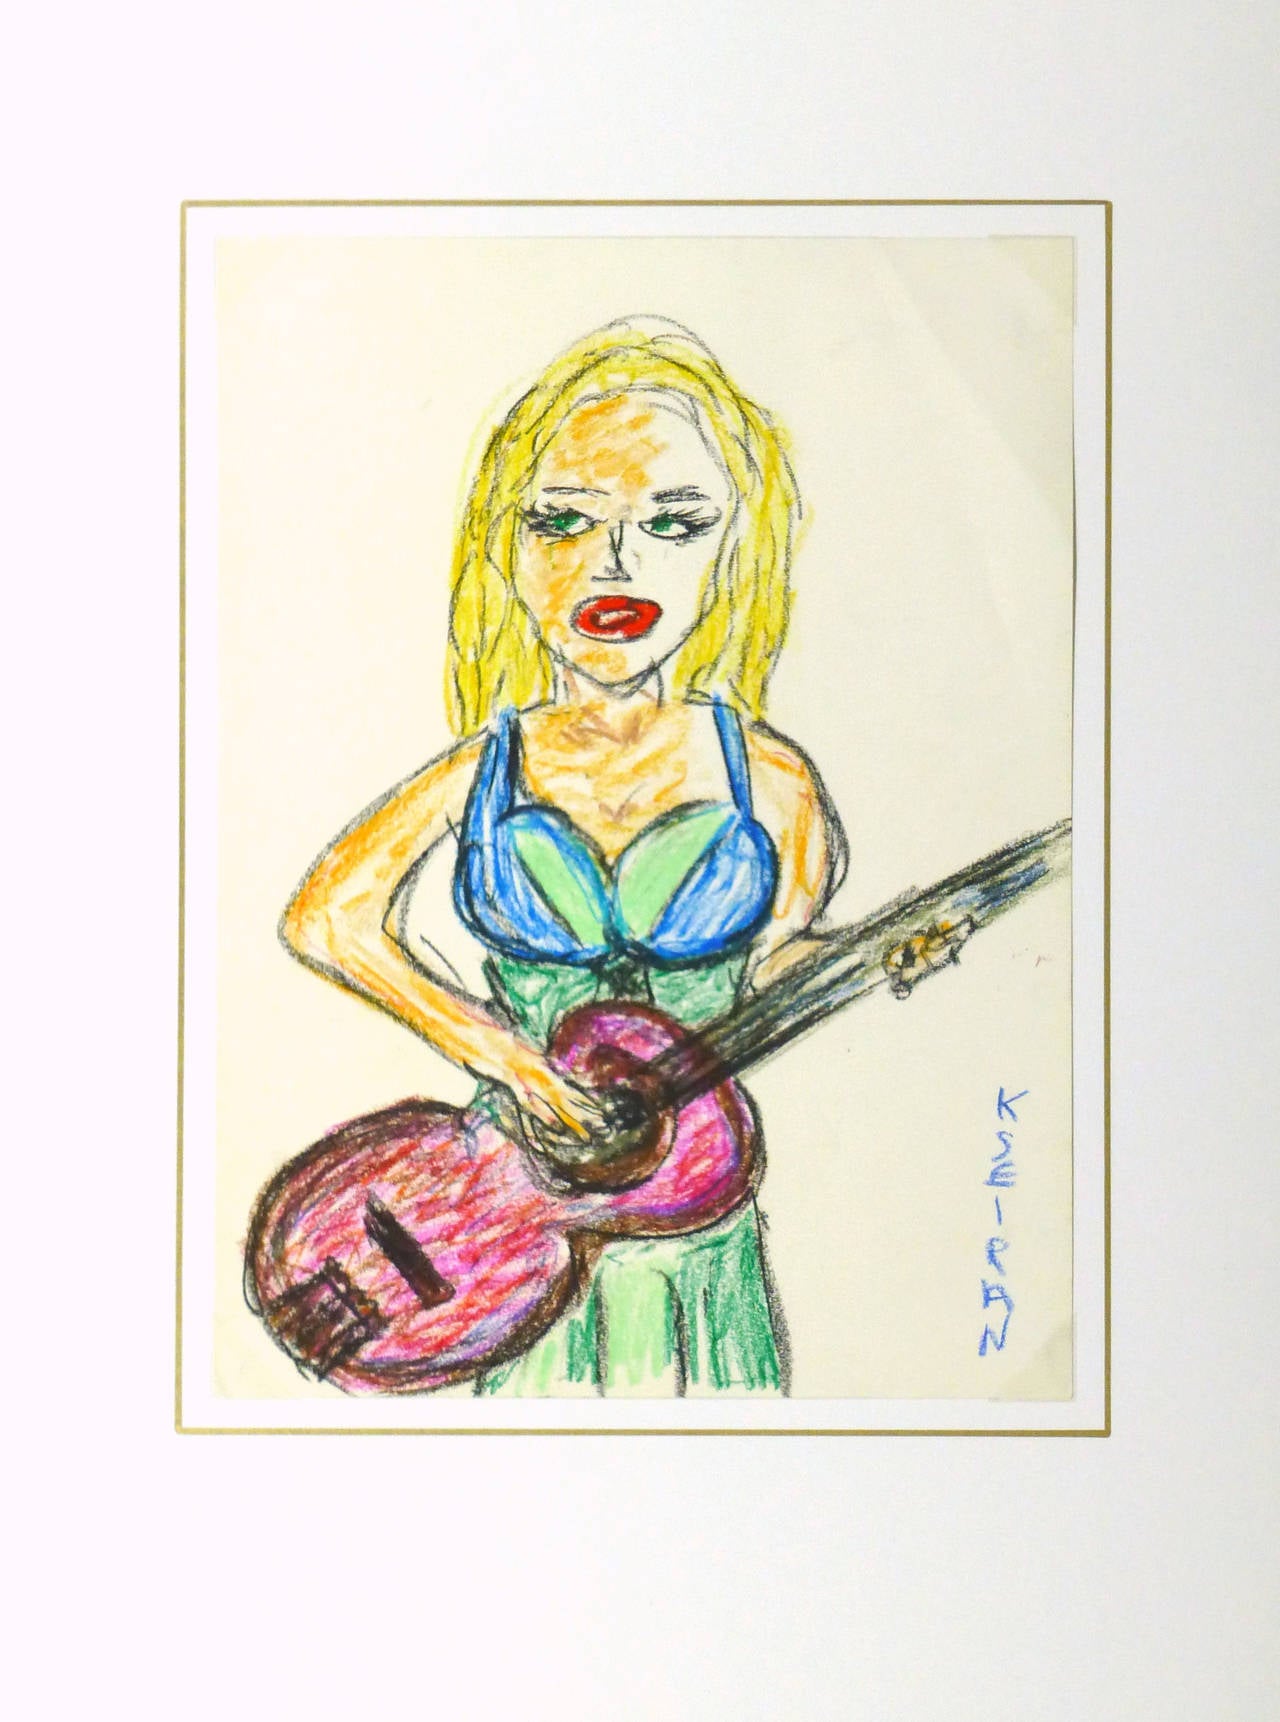 Dessin au pastel à l'huile d'une jeune femme habillée de couleurs vives jouant de la guitare, réalisé par l'artiste Kseiran en 2009. Signé en bas à droite.

Œuvre d'art originale unique sur papier présentée sur un tapis blanc avec une bordure dorée.